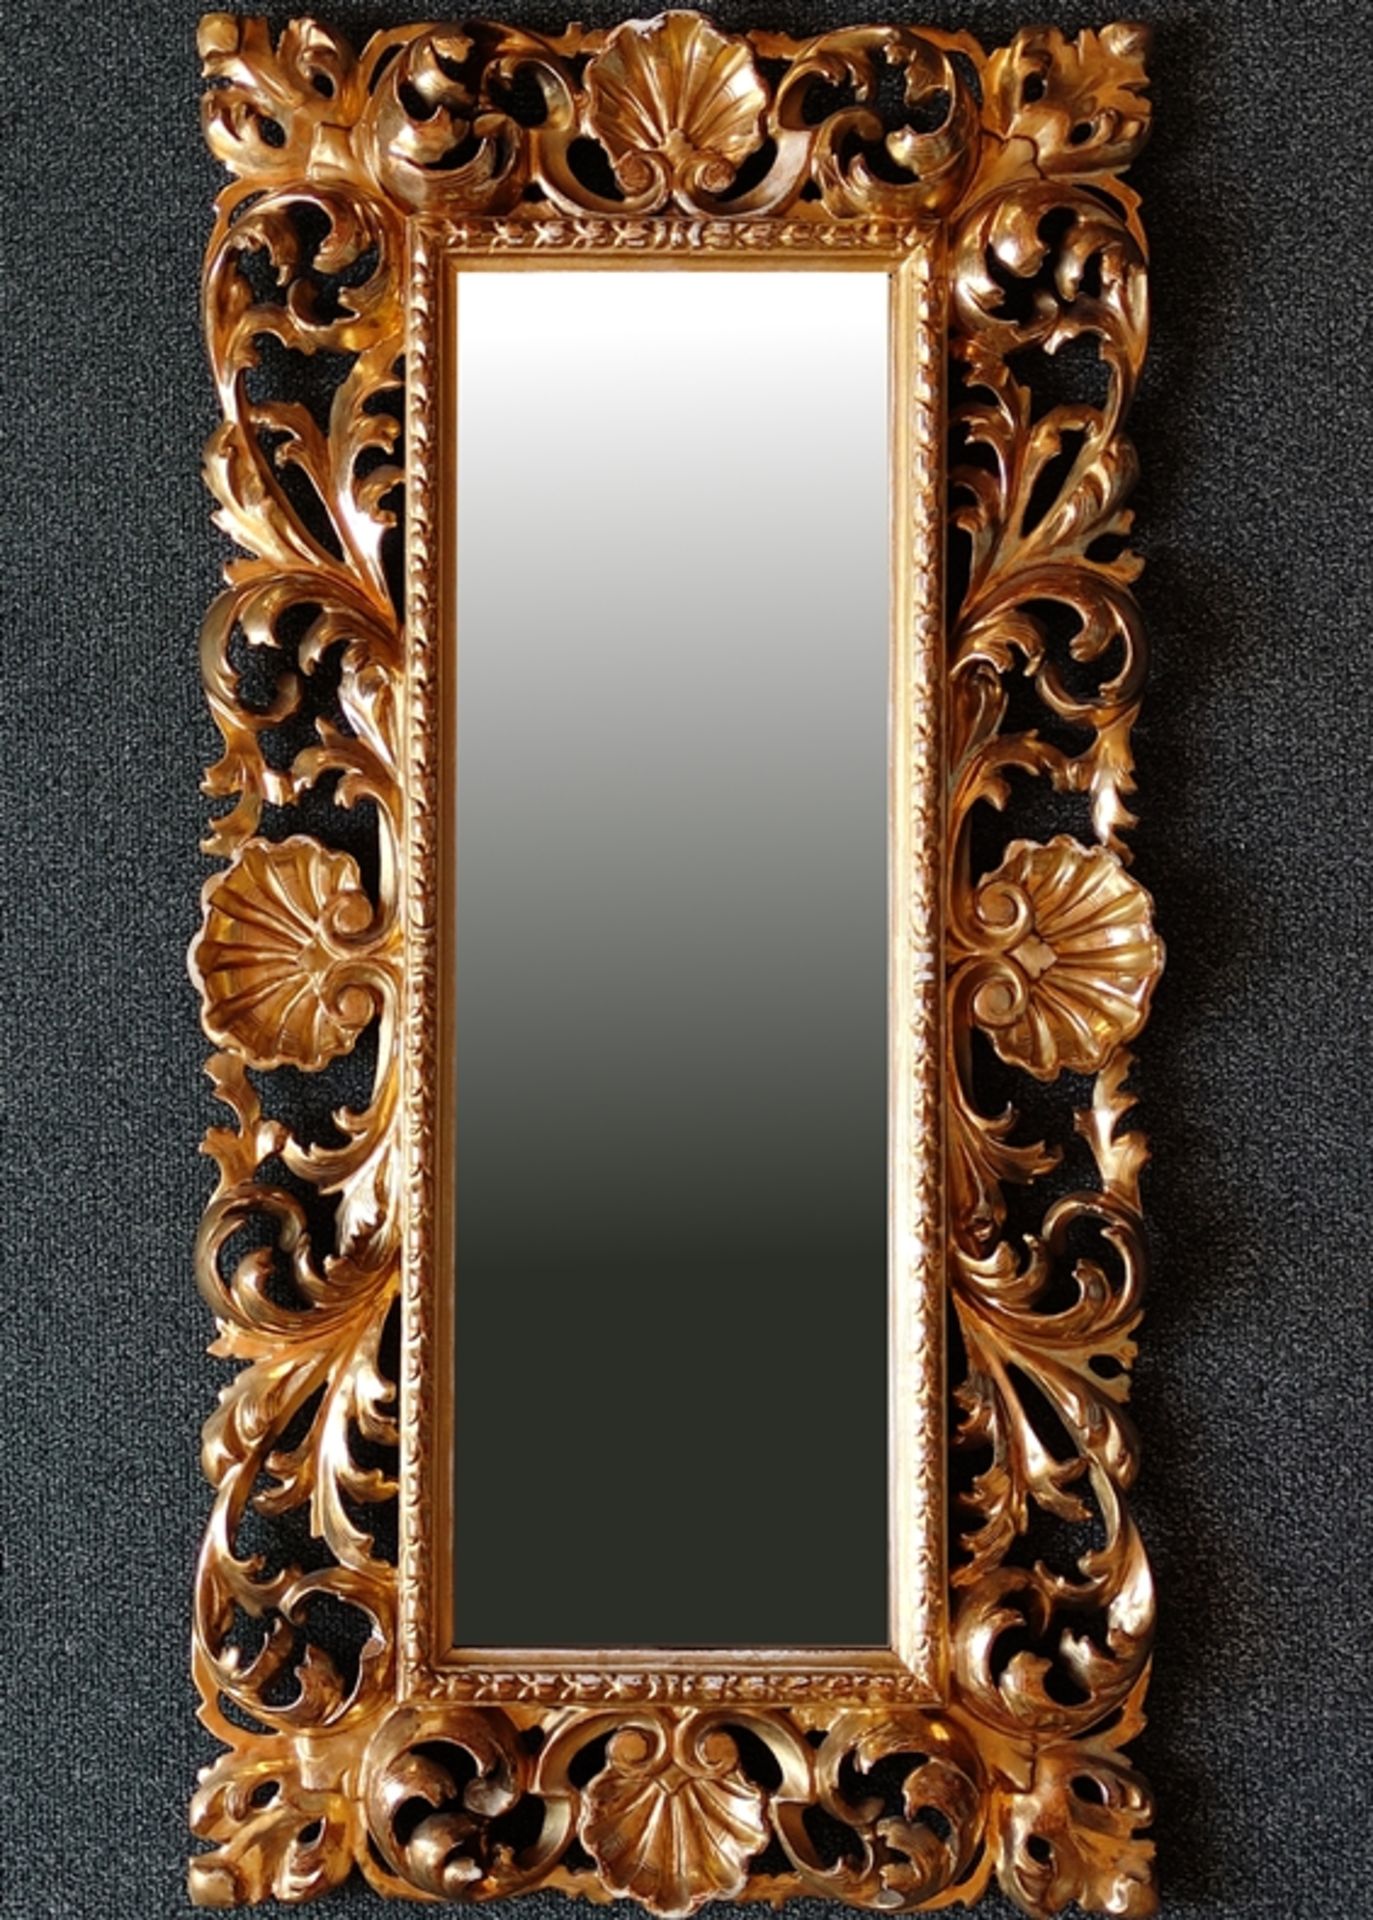 Aufwendig geschnitzter Goldrahmen mit eingesetztem Spiegelglas, barocke Blattornamentik, plastisch 